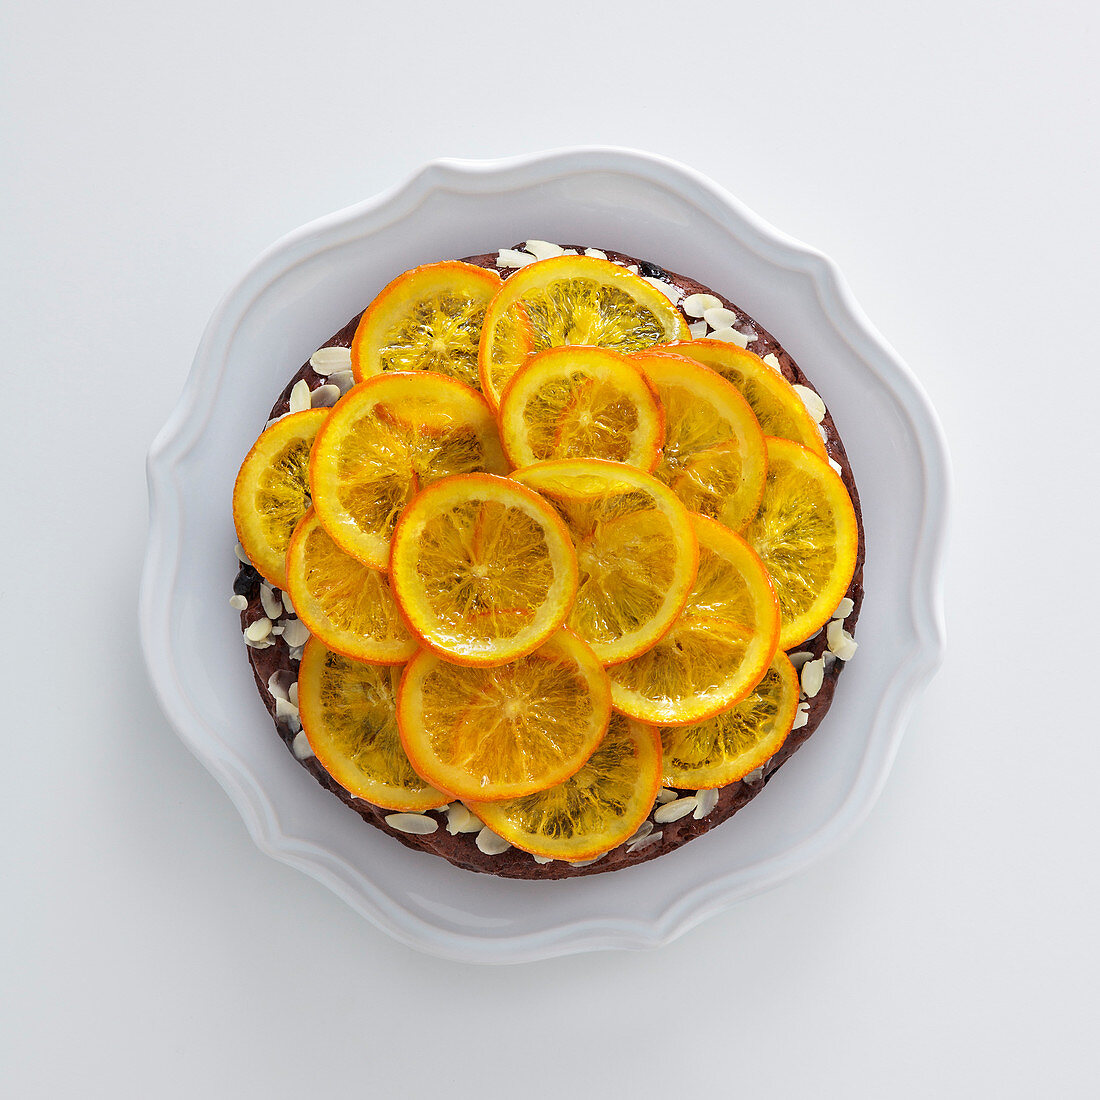 Eifreier Schokoladenkuchen mit Honig, Mandeln und Orangen